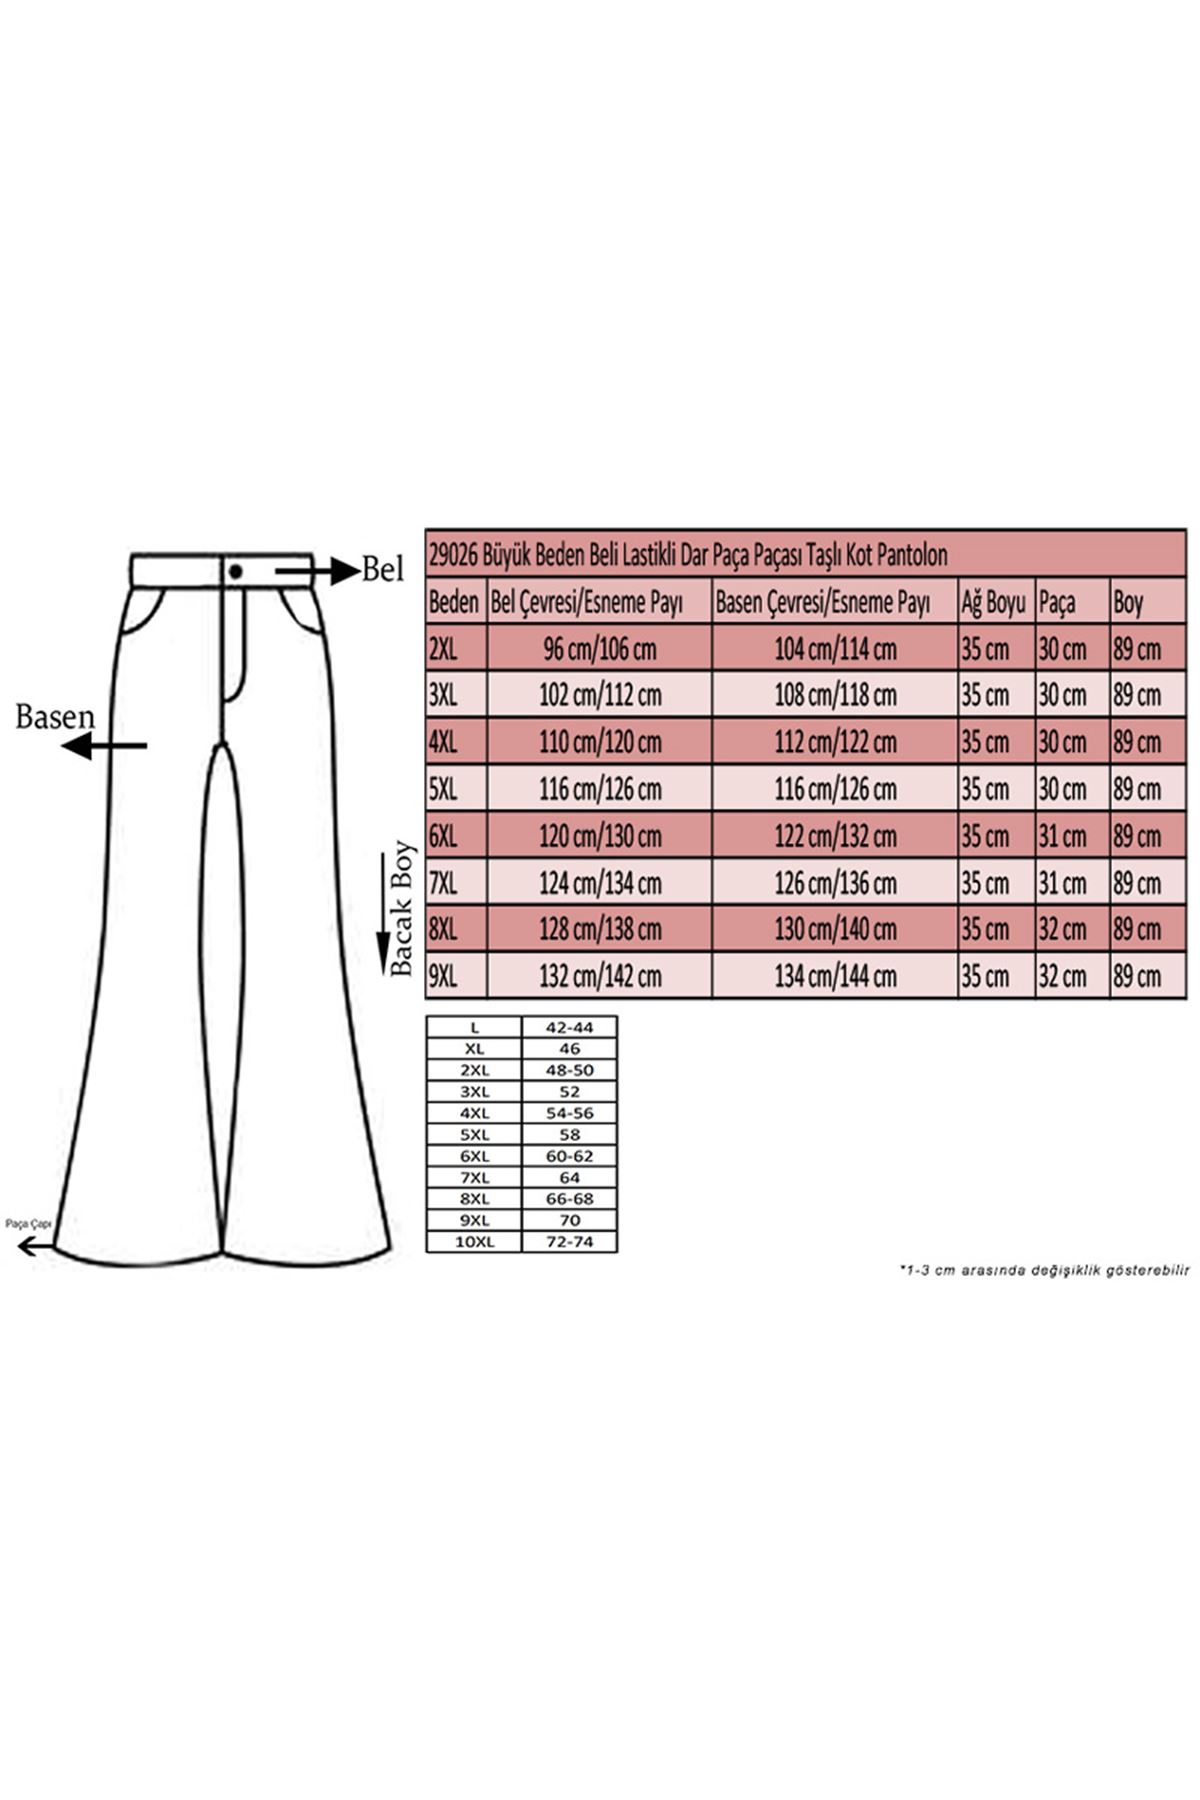 D-29026 Büyük Beden Beli Lastikli Dar Paça Paçası Taşlı Kot Defolu  Pantolon-Koyu Mavi 